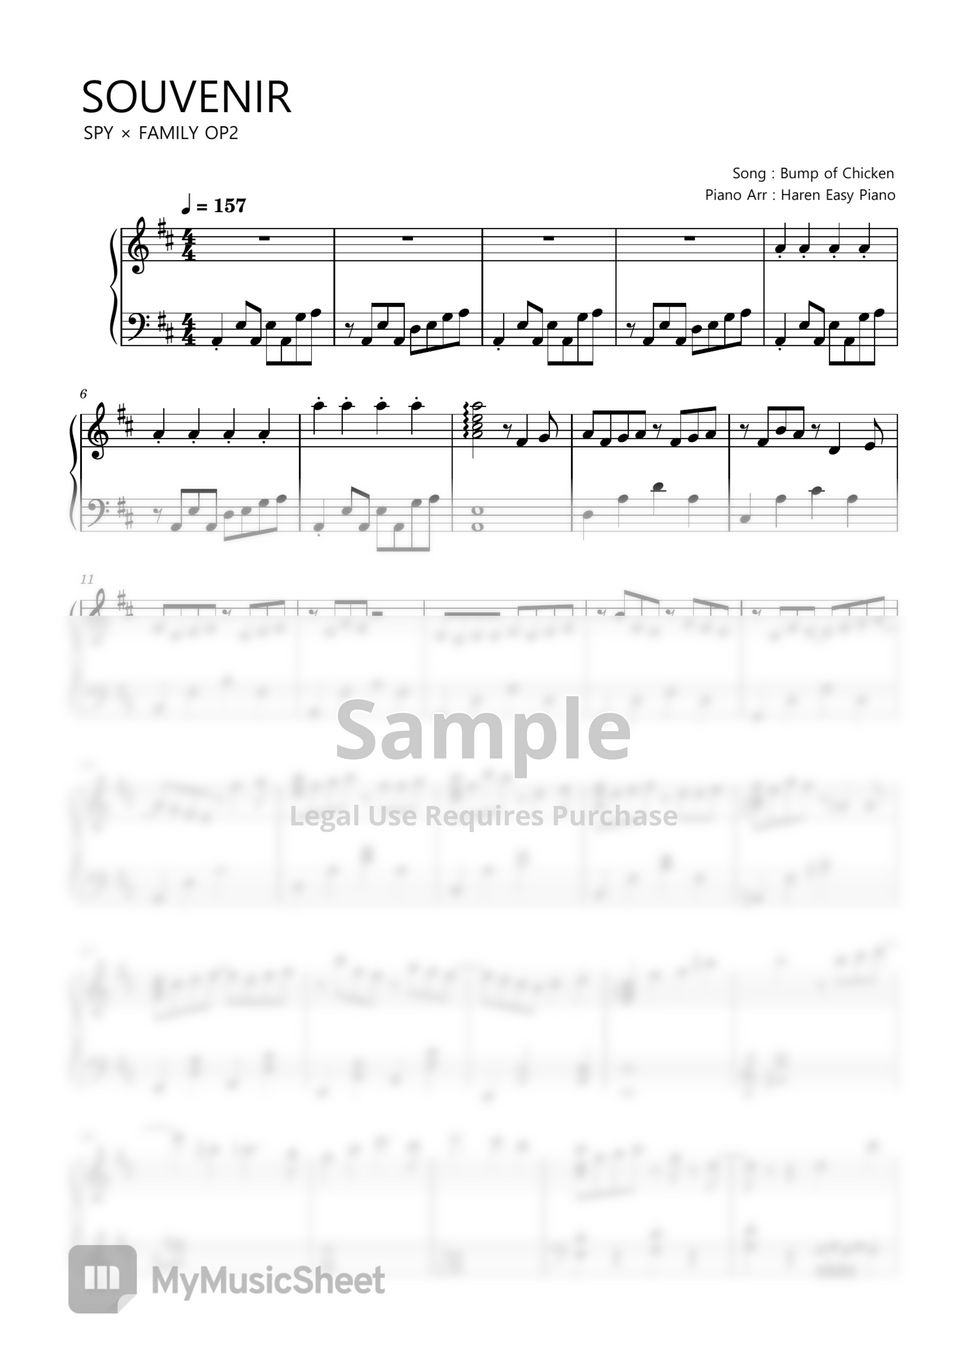 SPY × FAMILY OP2 - SOUVENIR (Normal ver) by Haren Easy Piano